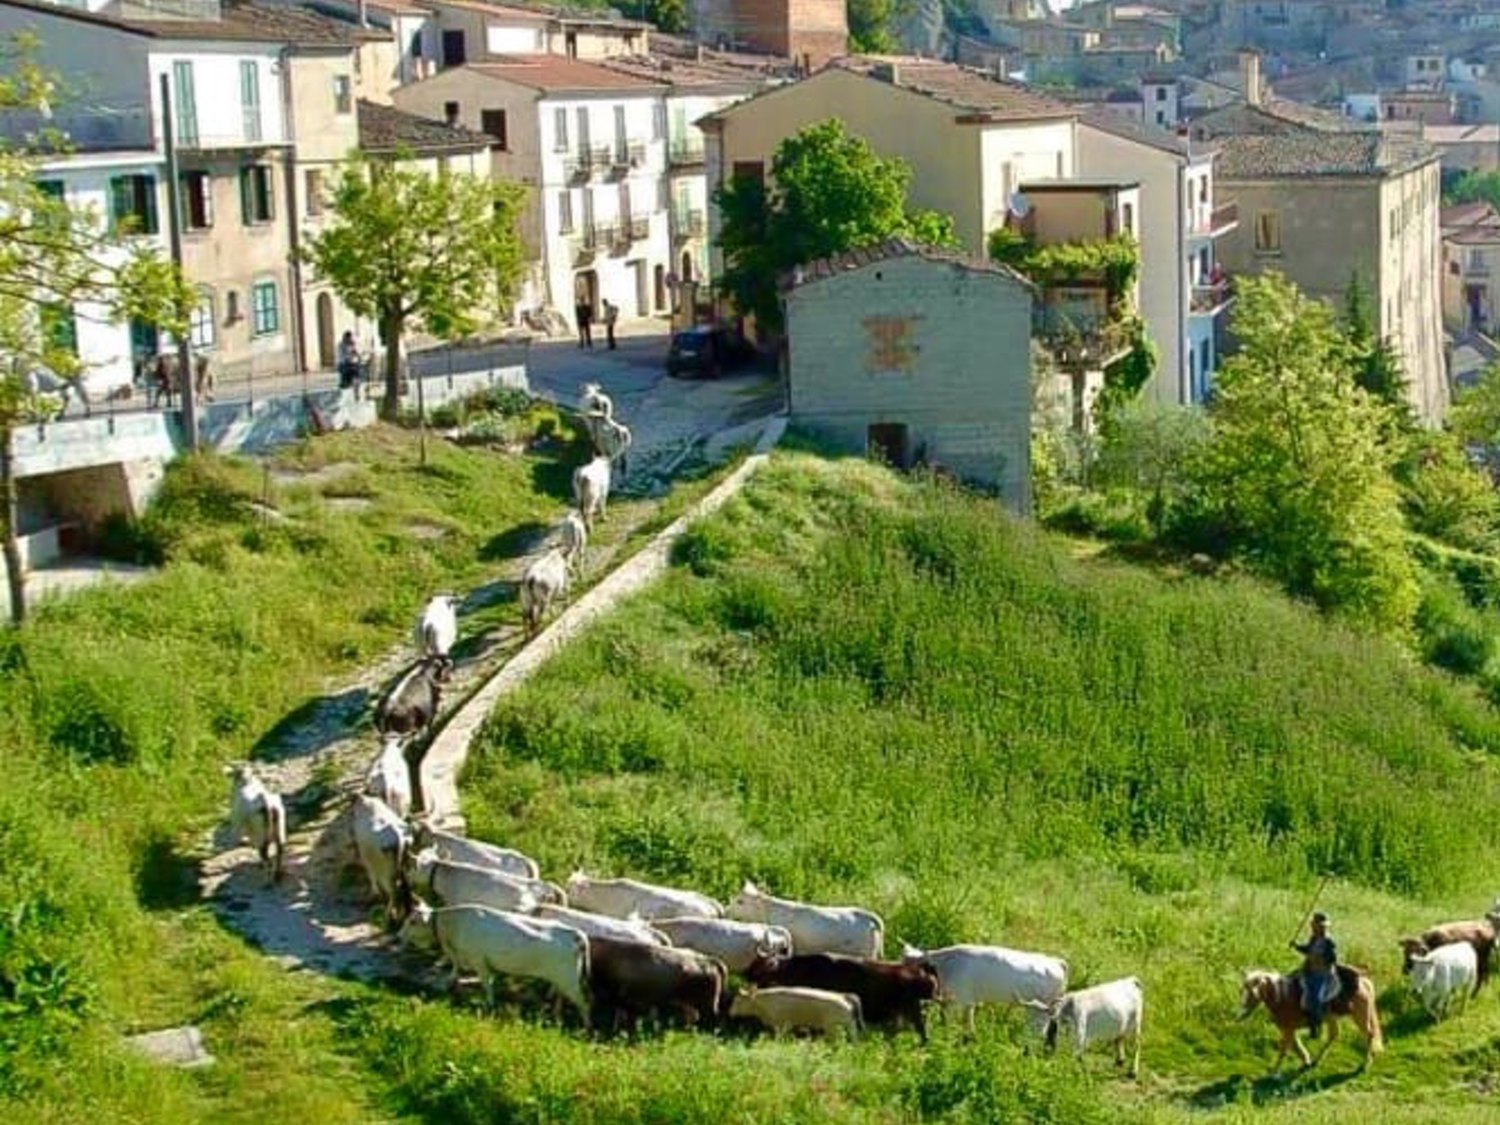 Castropignano, el pueblo italiano que vende casas a un euro para recuperar habitantes